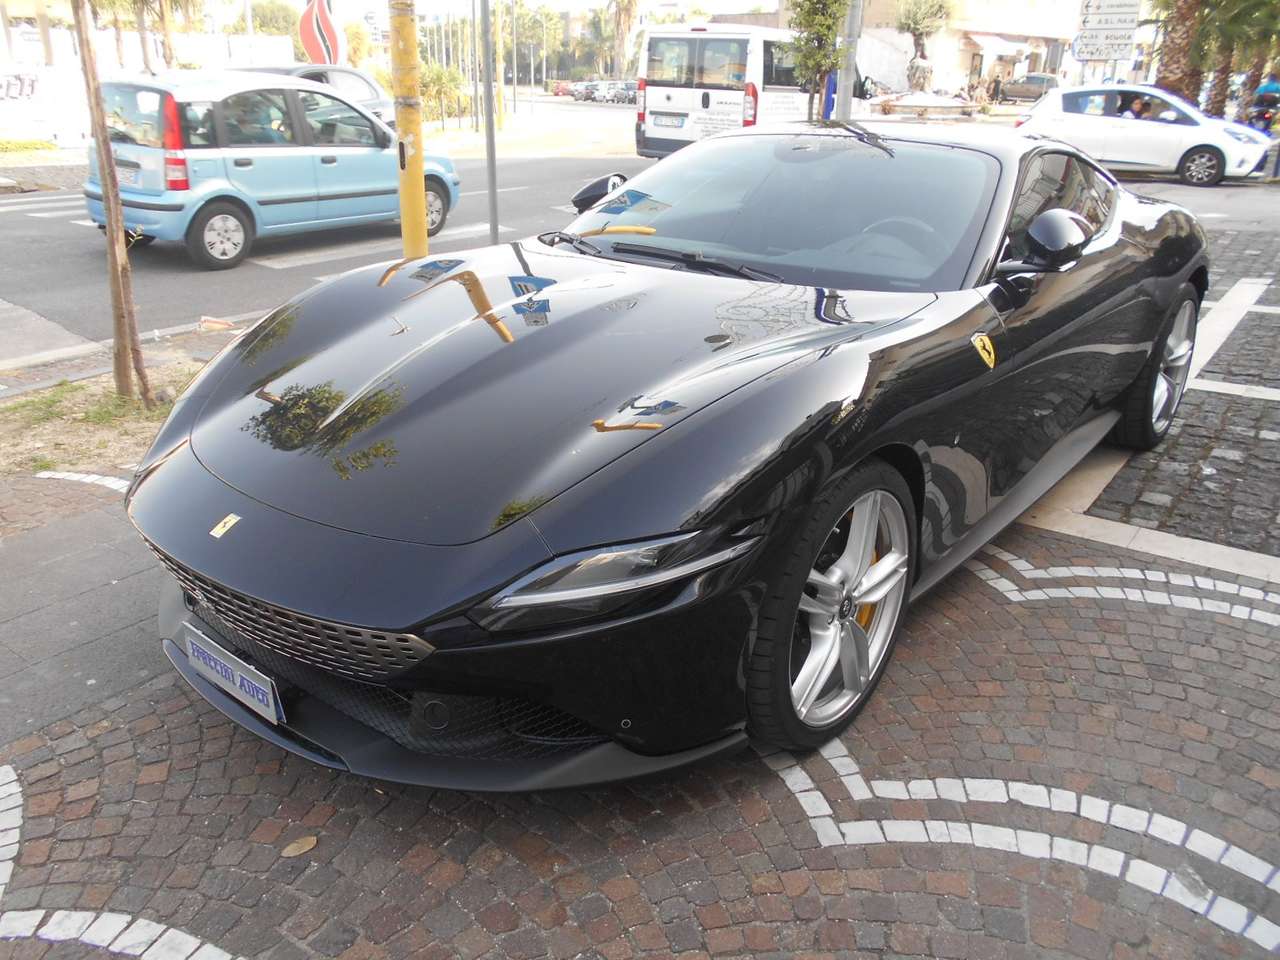 Ferrari Roma 